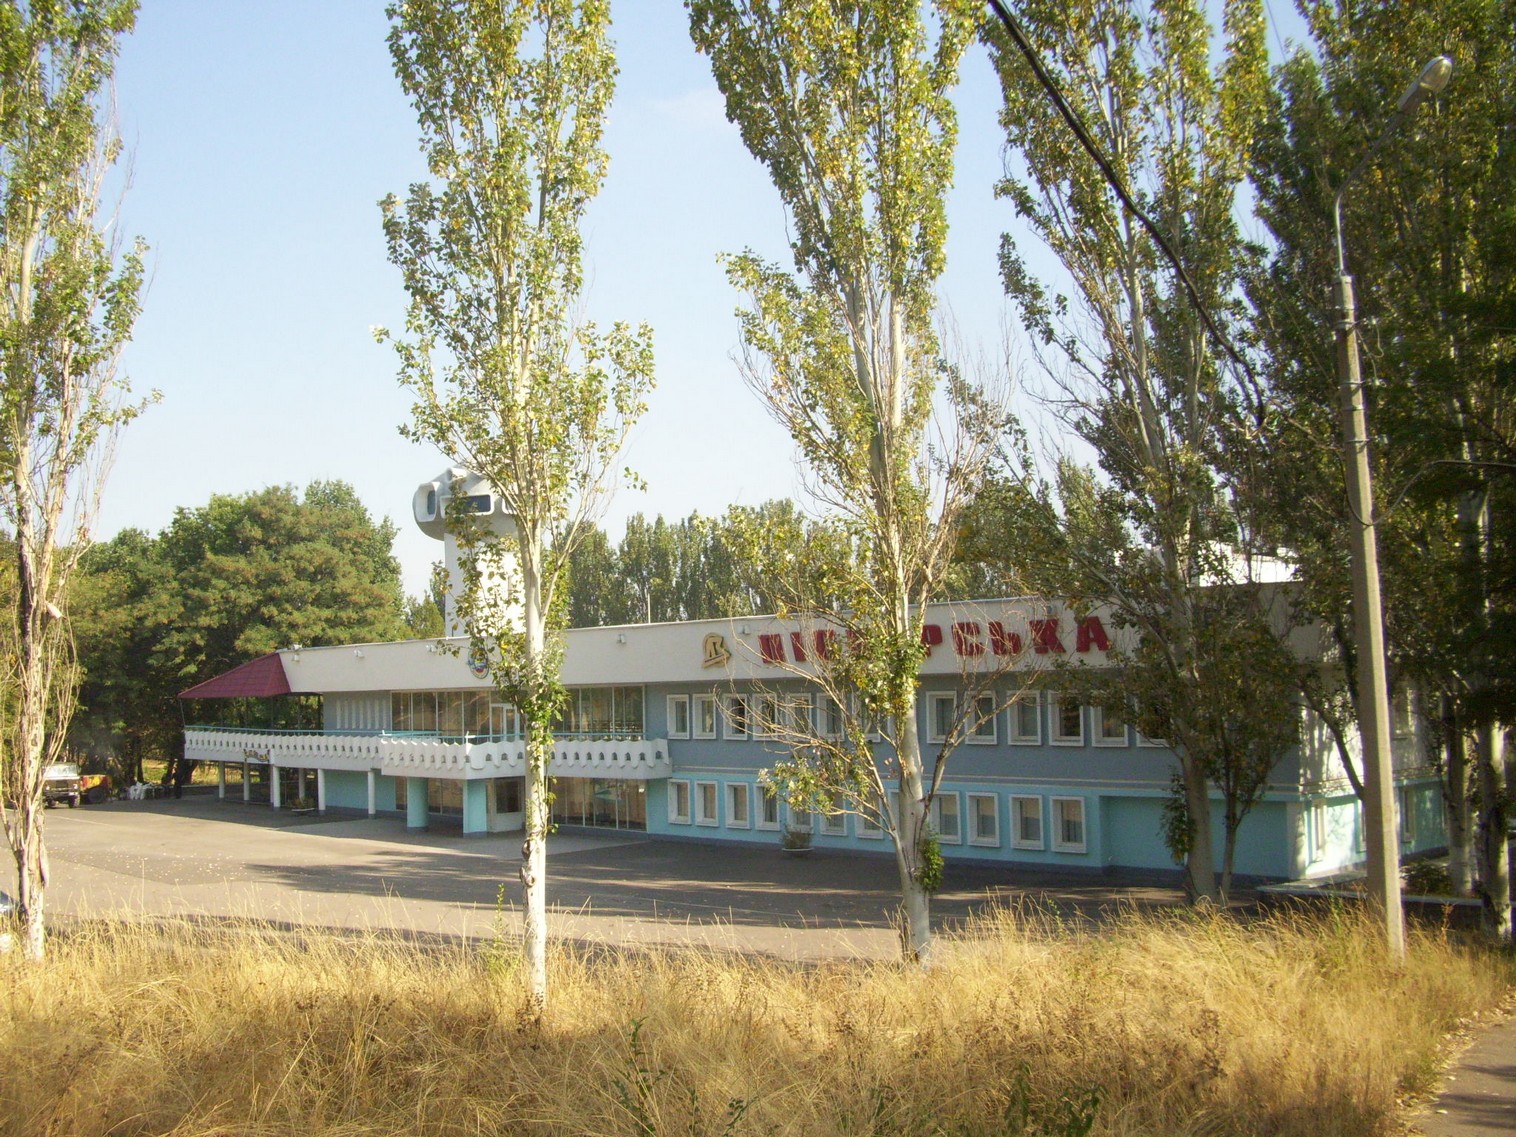 Донецкая детская железная дорога  —  фотографии, сделанные в 2010 году (часть 1)